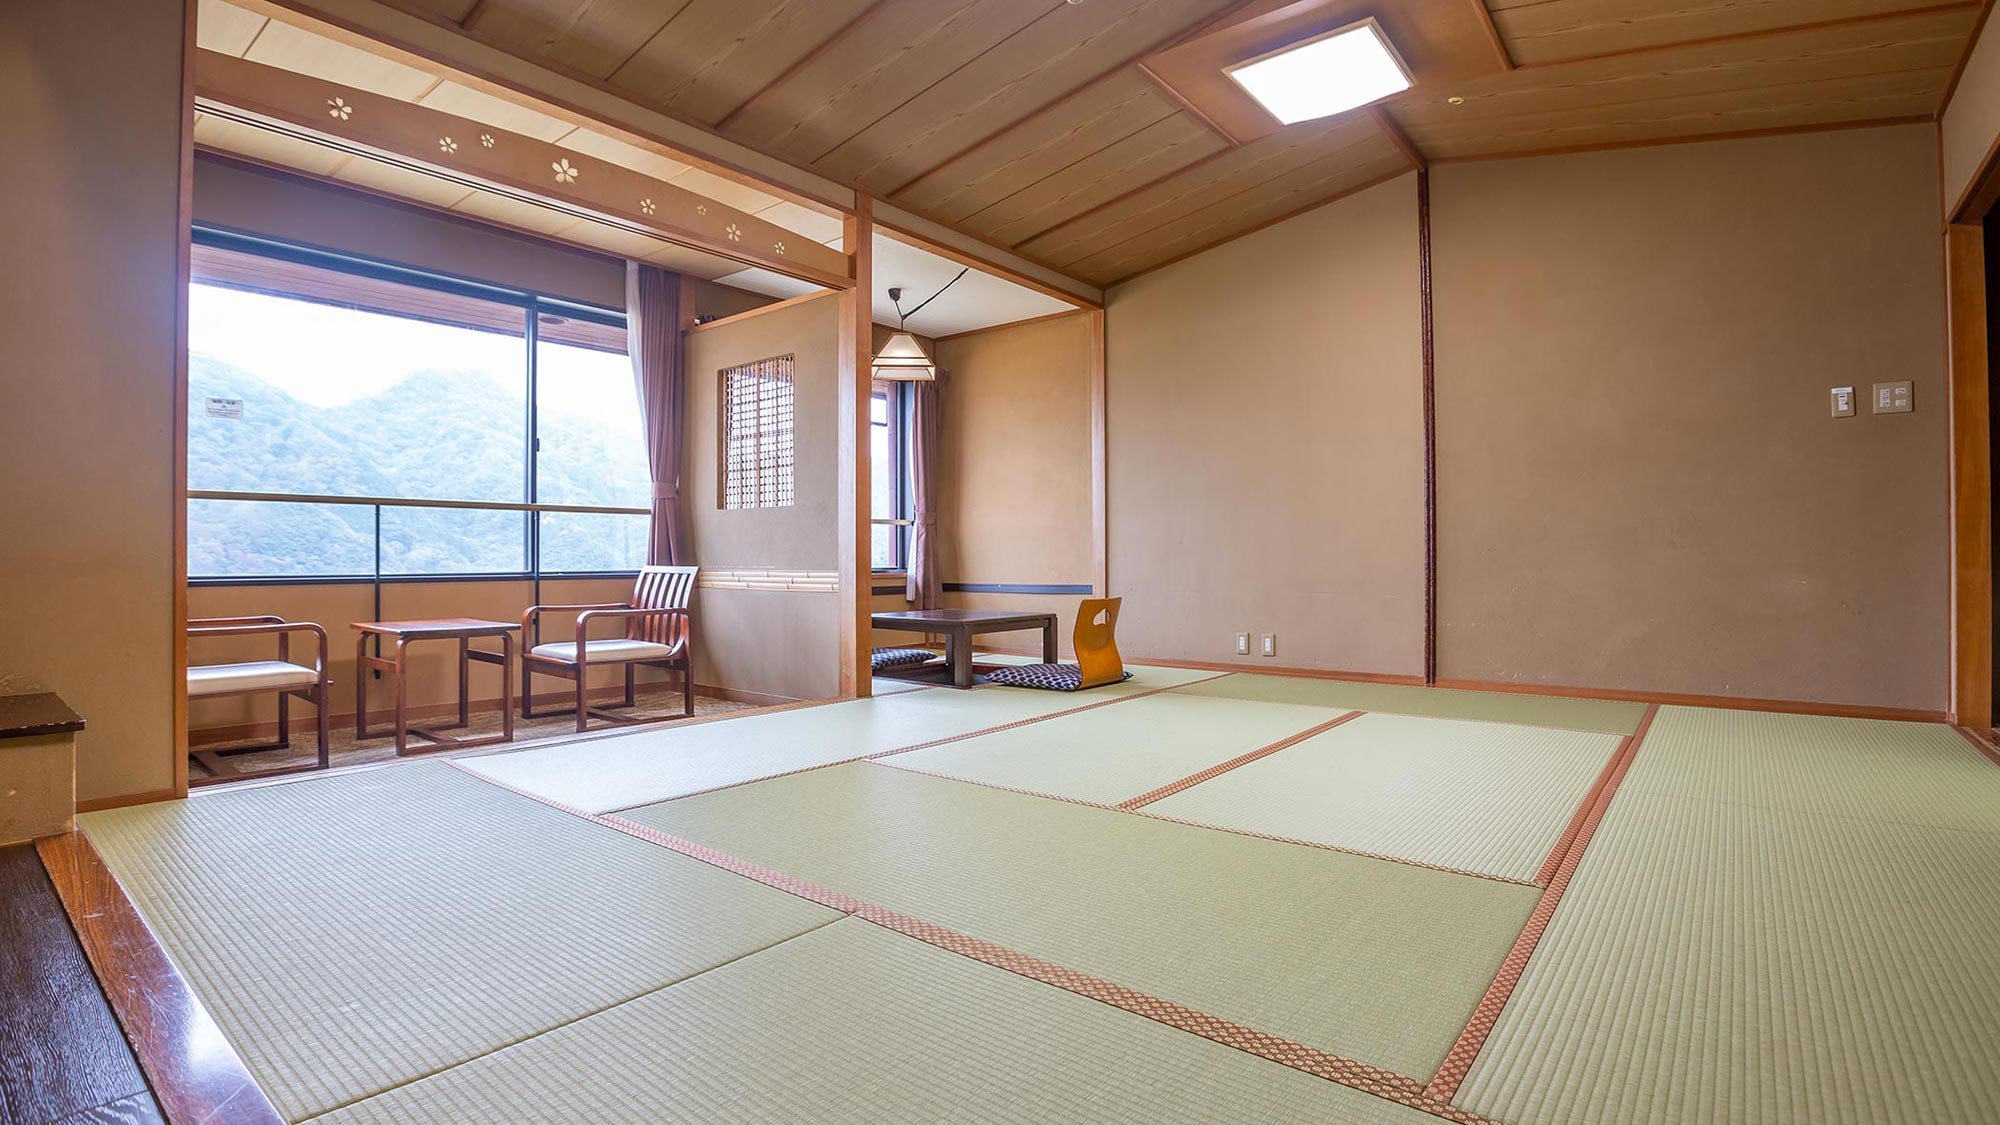 다리를 펴고 한가로이 보낼 수 있는 일본식 방이나, 사용하기 편리한 양실, 메조네트 타입도 있습니다.